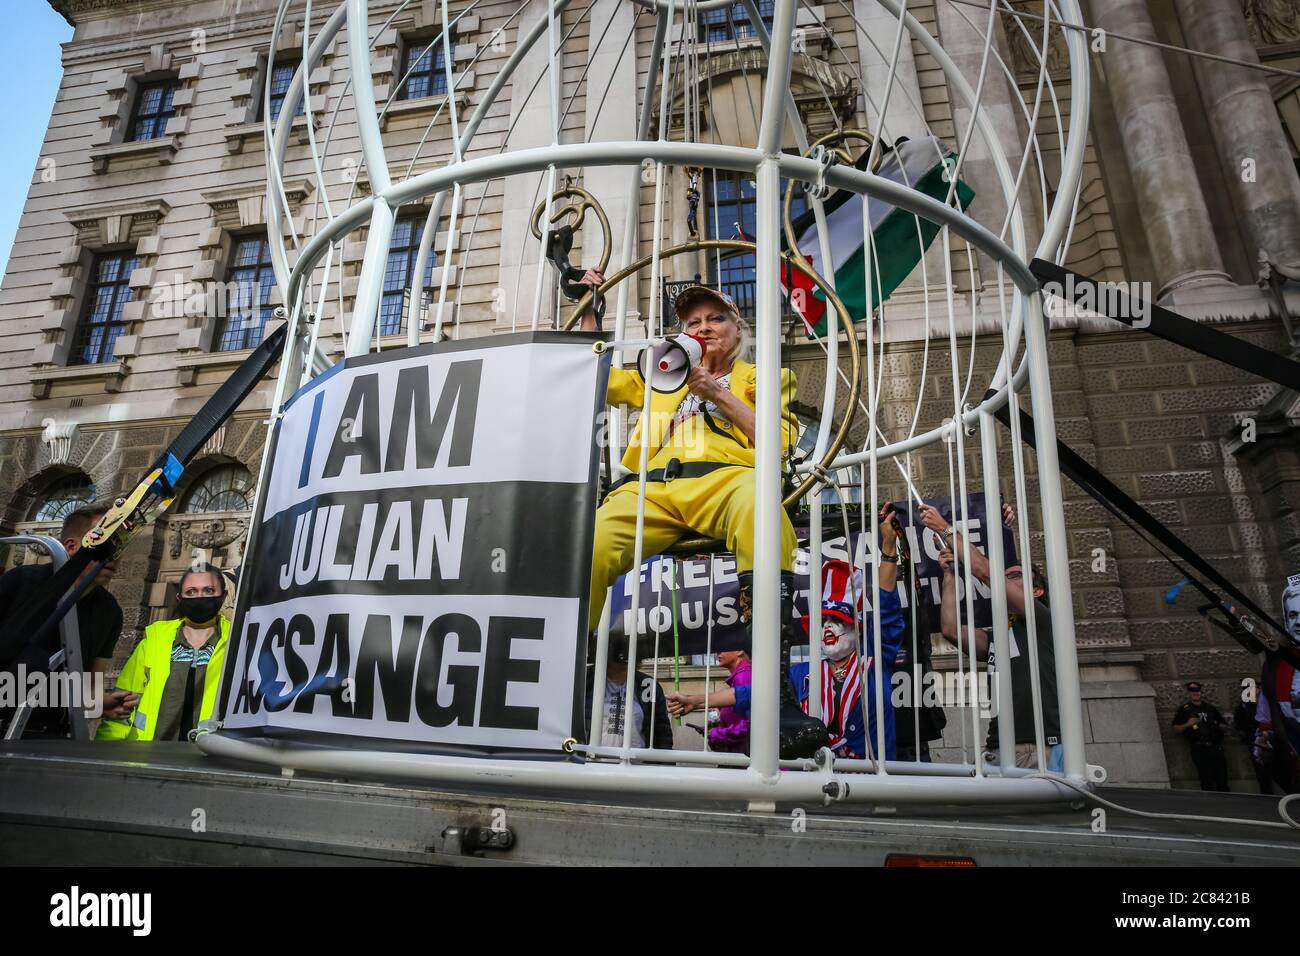 Londres, Reino Unido, 21 de julio de 2020. Dame Vivienne Westwood está enjaezada en una jaula gigante con un signo de "Yo soy Julian Assange", y suspendido 10 pies en el aire frente a la Corte Penal Central de Old Bailey, en protesta por la extradición de Julian Assange por los Estados Unidos. Westwood está vestido con un traje de pantalón amarillo, que enfigura la metáfora de la mina de carbón de Canarias, para ilustrar que Assange está siendo sacrificado. Más tarde se presenta frente al Viejo Bailey con su mensaje. Crédito: Imageplotter/Alamy Live News Foto de stock